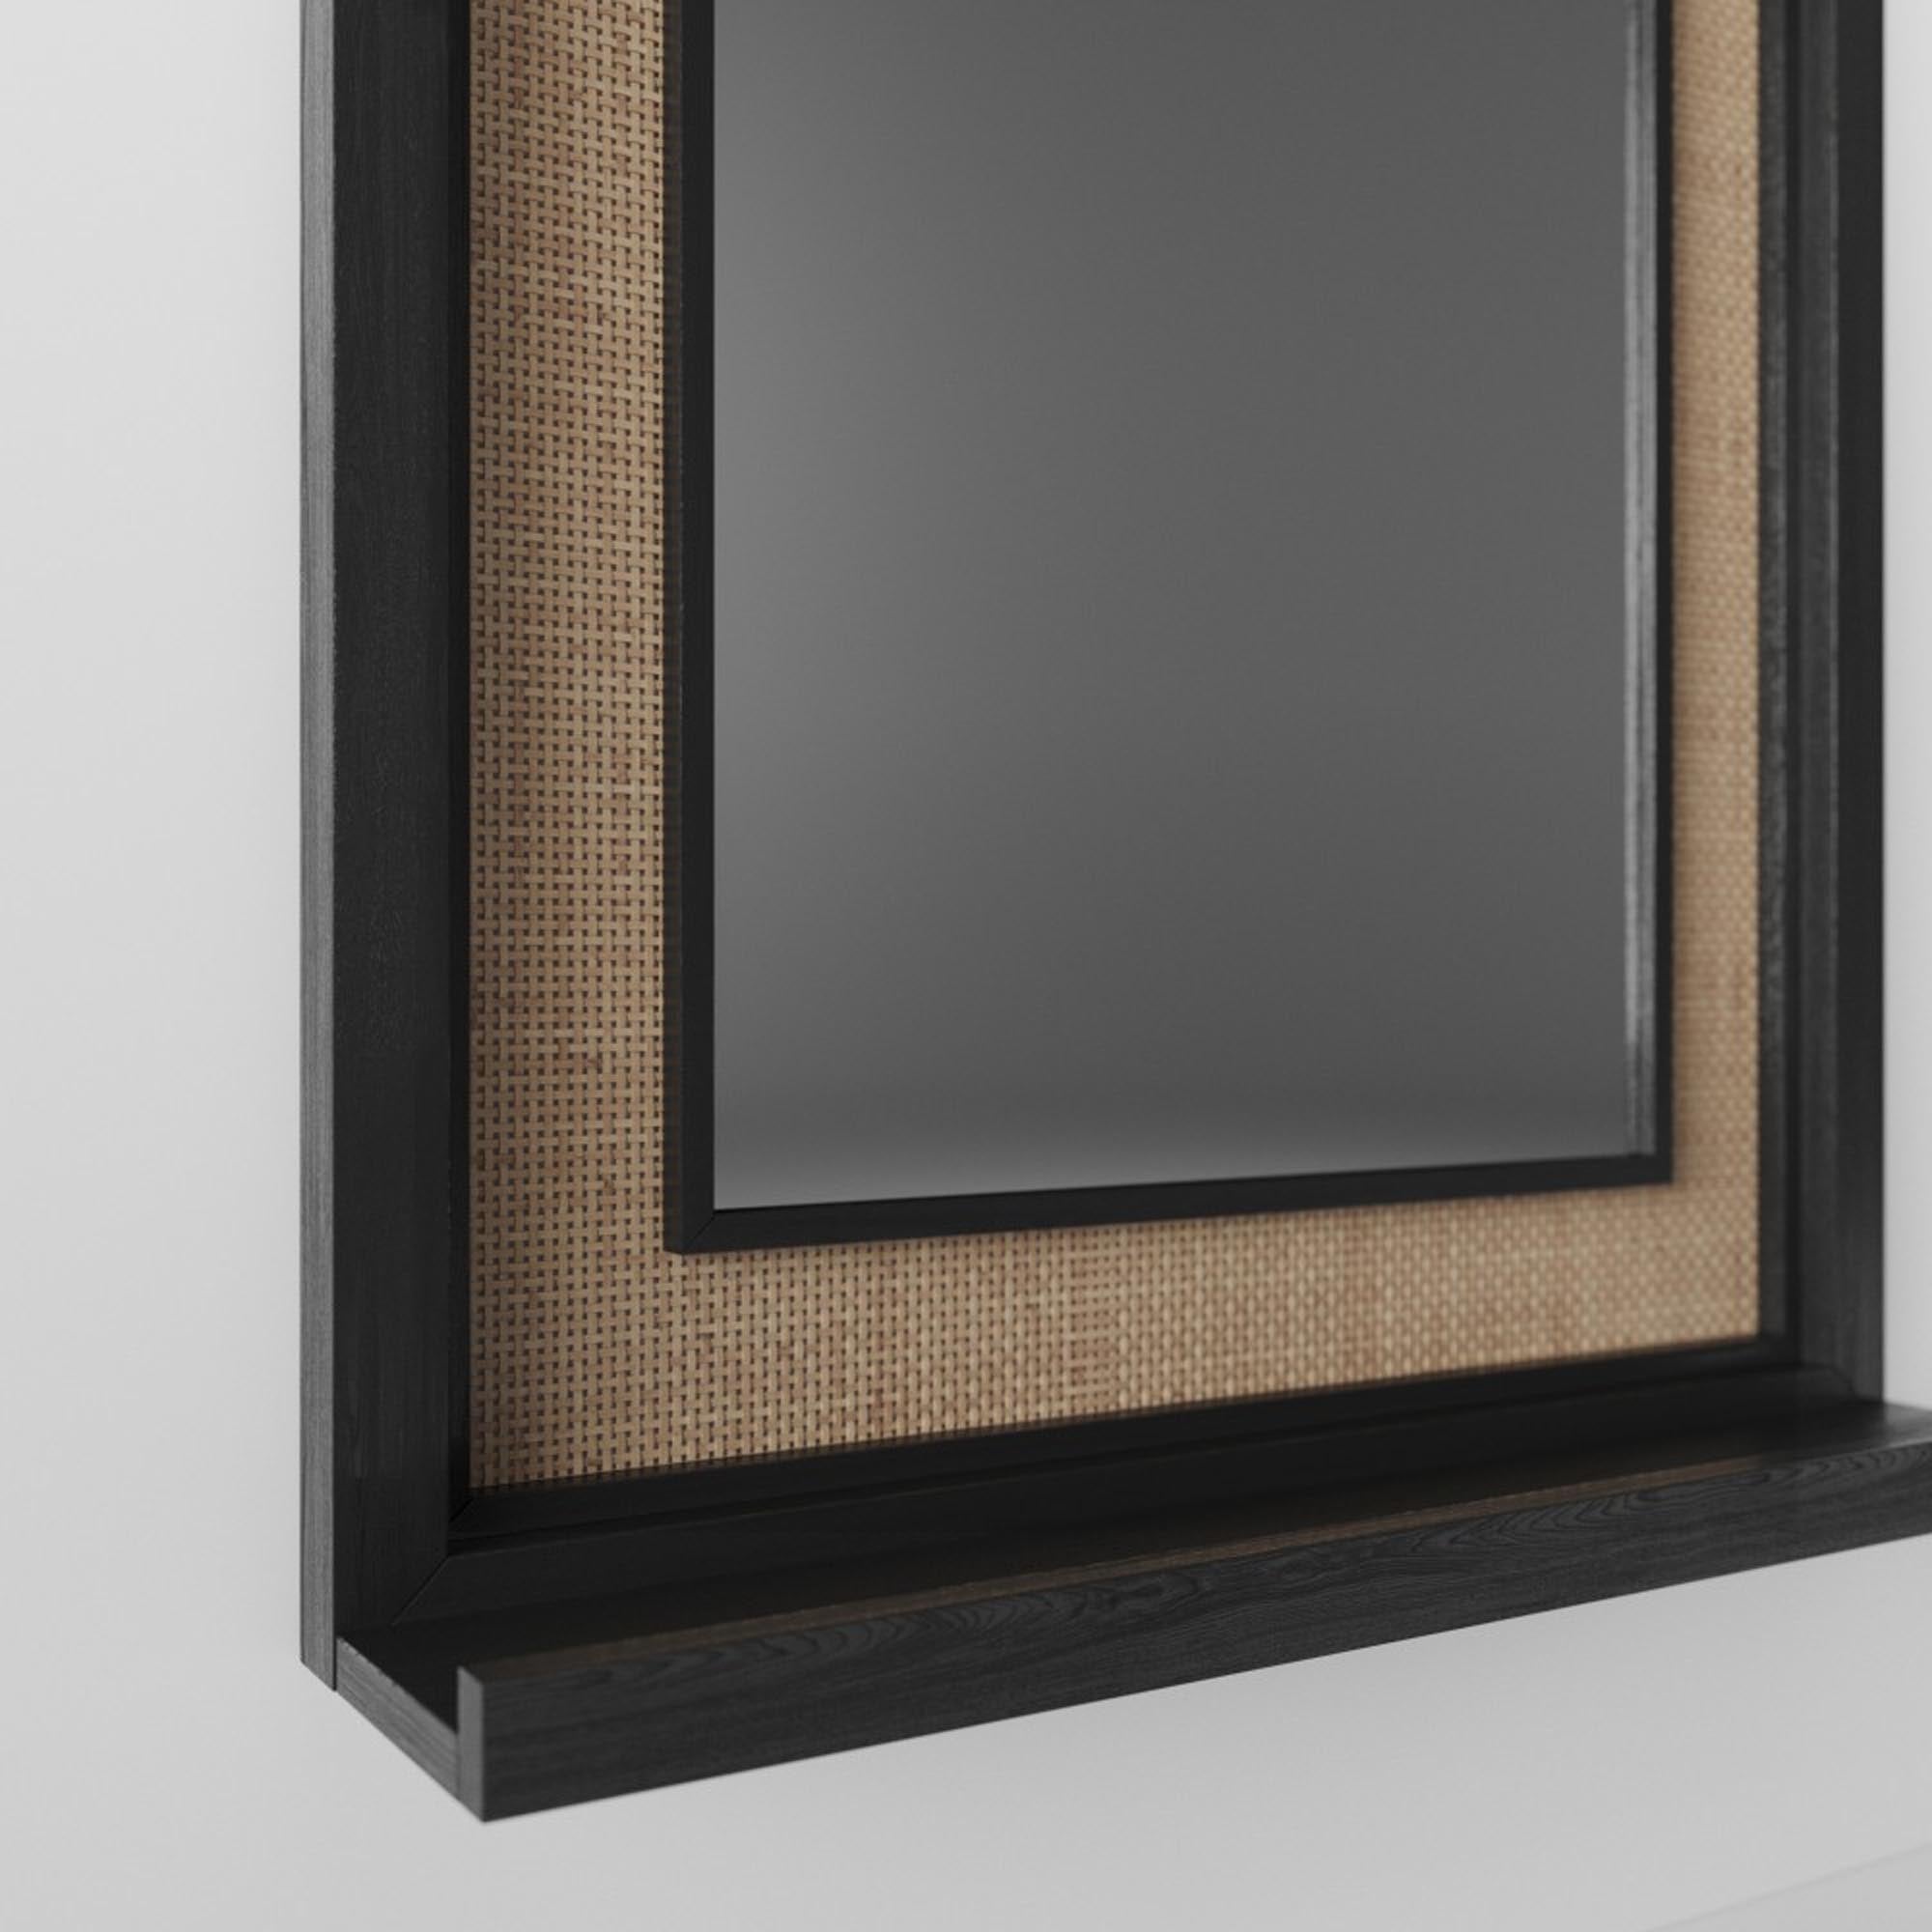 Зеркало TENETA S116, из натурального дерева, черного цвета